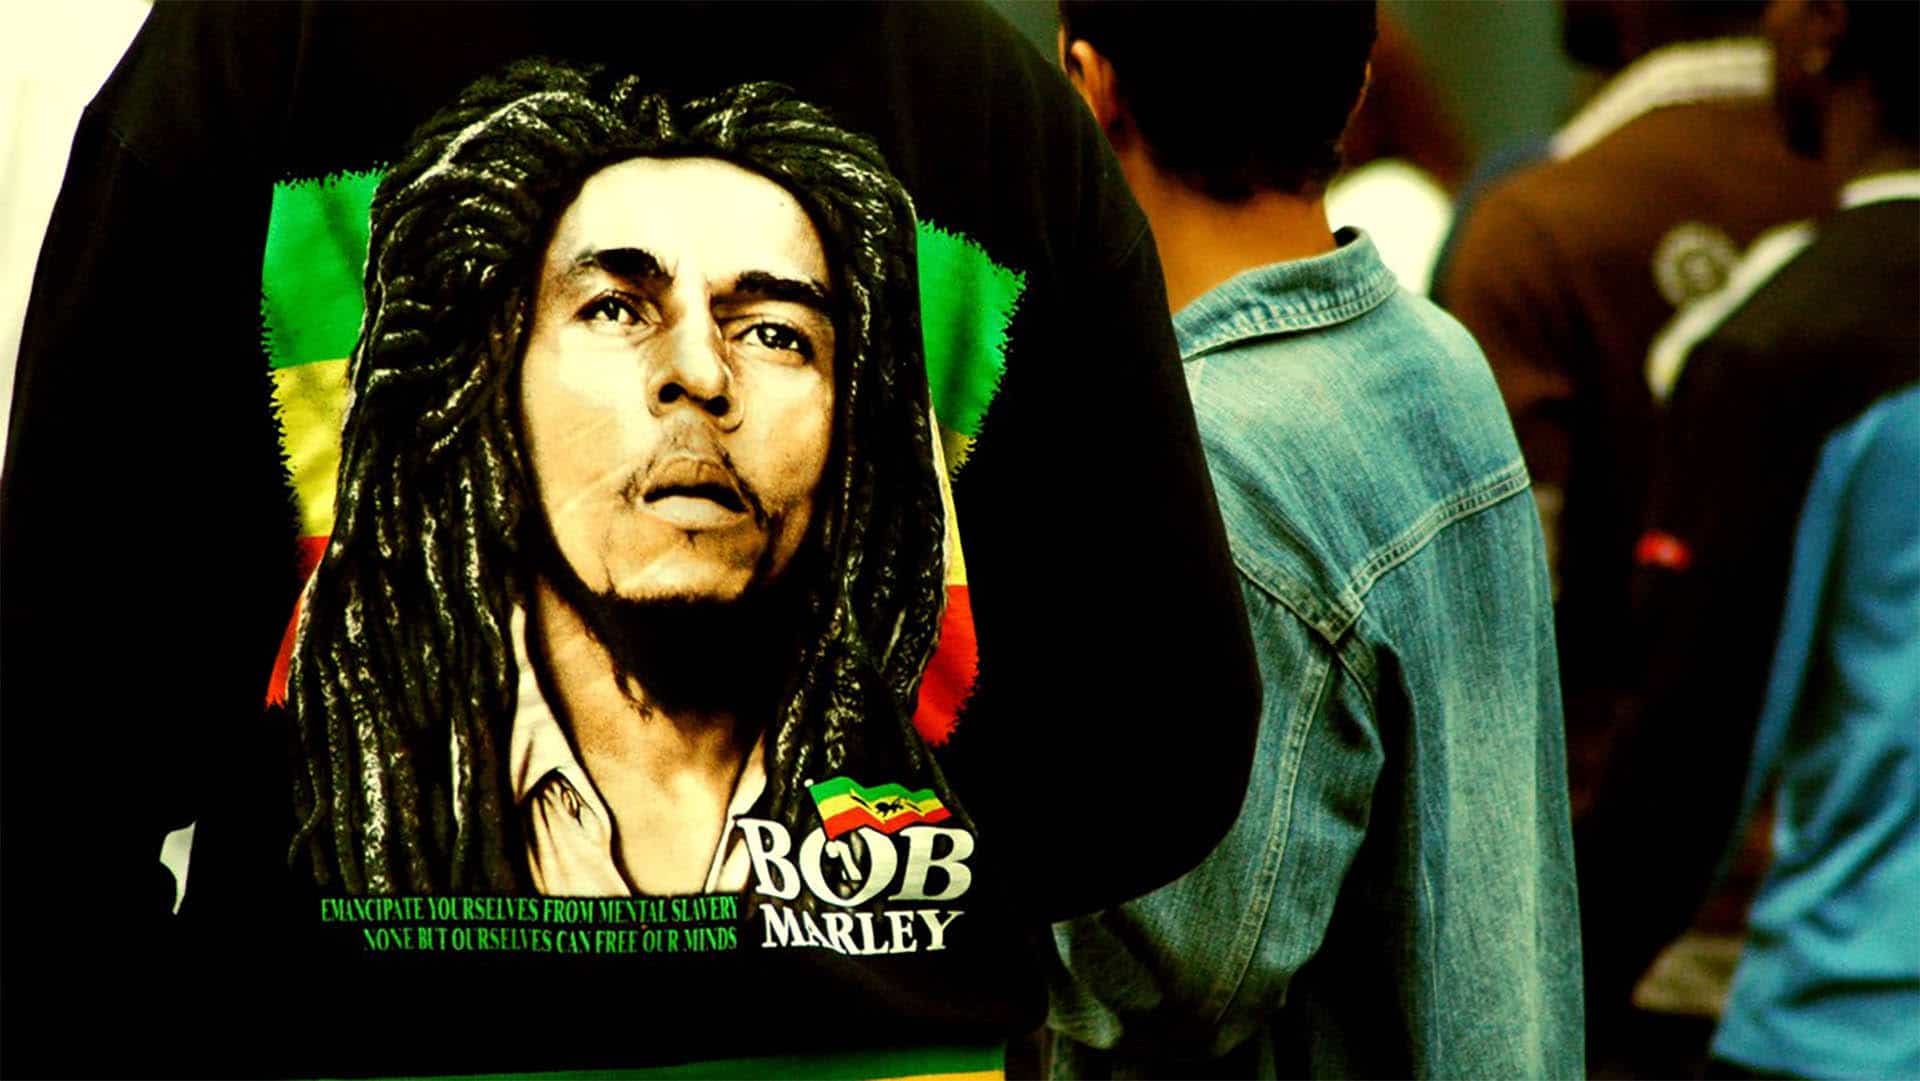 Einer der erfolgreichsten Musiker des 20. Jahrhunderts: Der 1981 verstorbene Bob Marley würde heute 75 Jahre alt